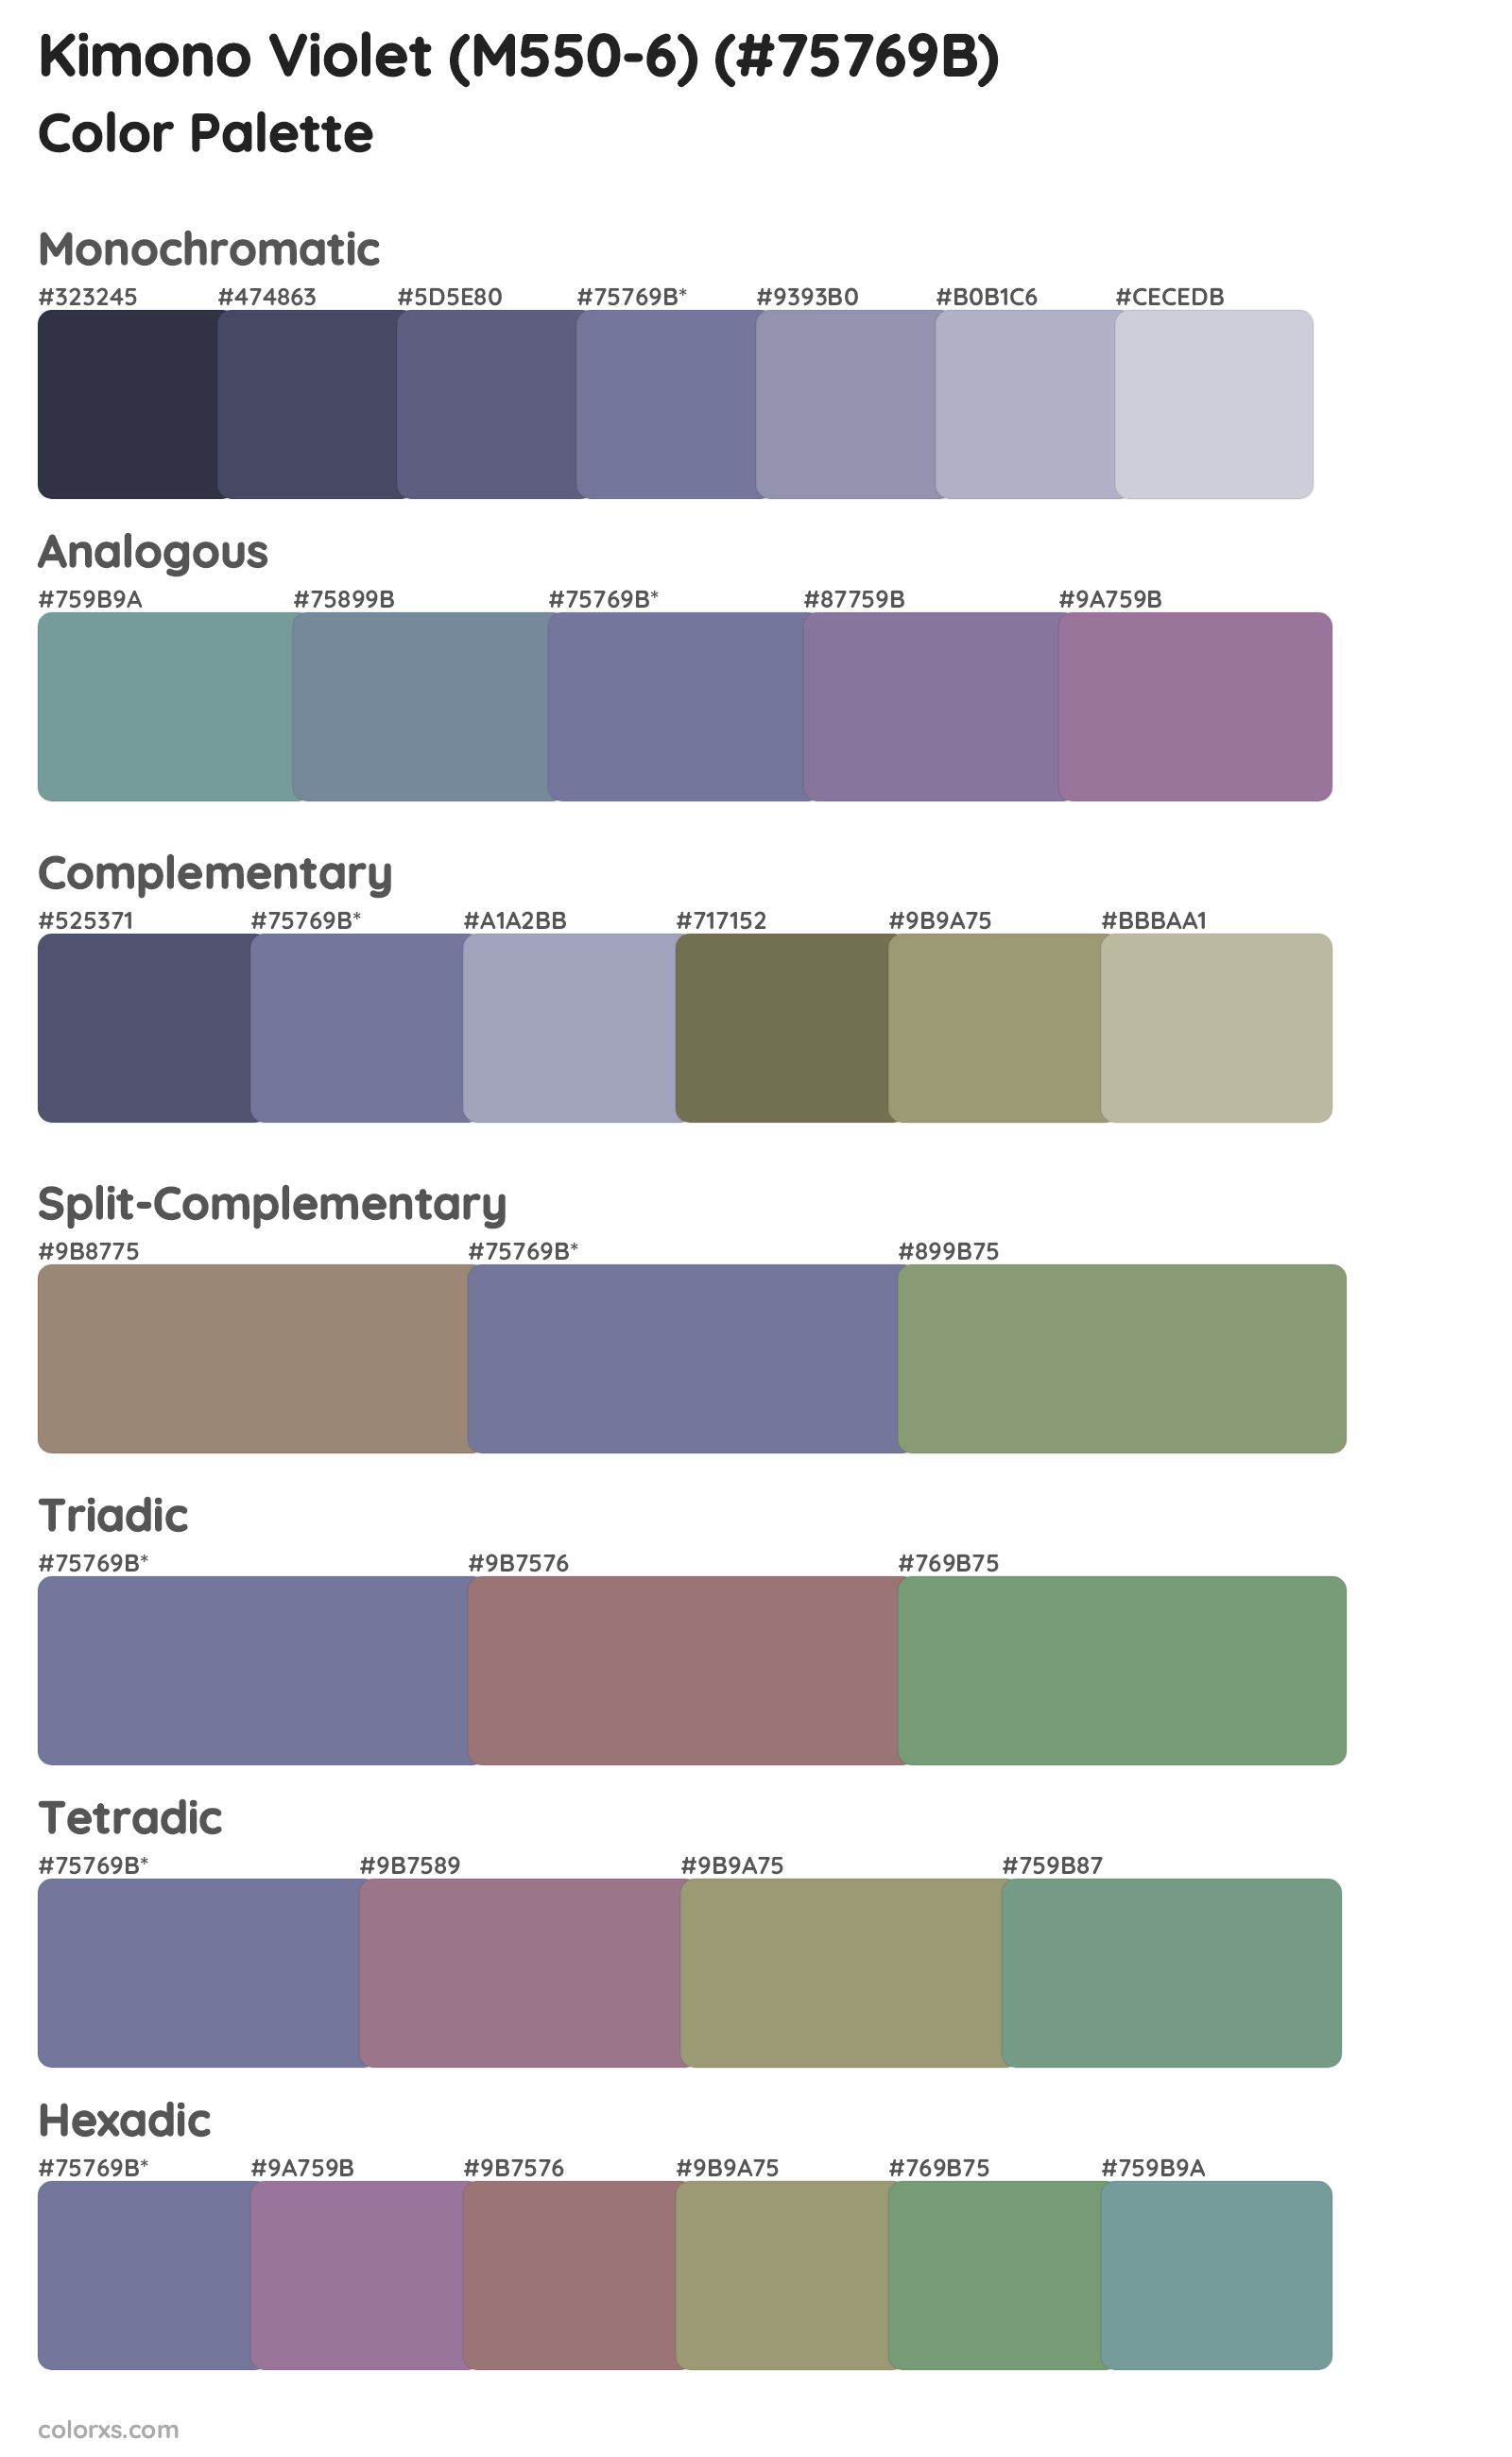 Kimono Violet (M550-6) Color Scheme Palettes